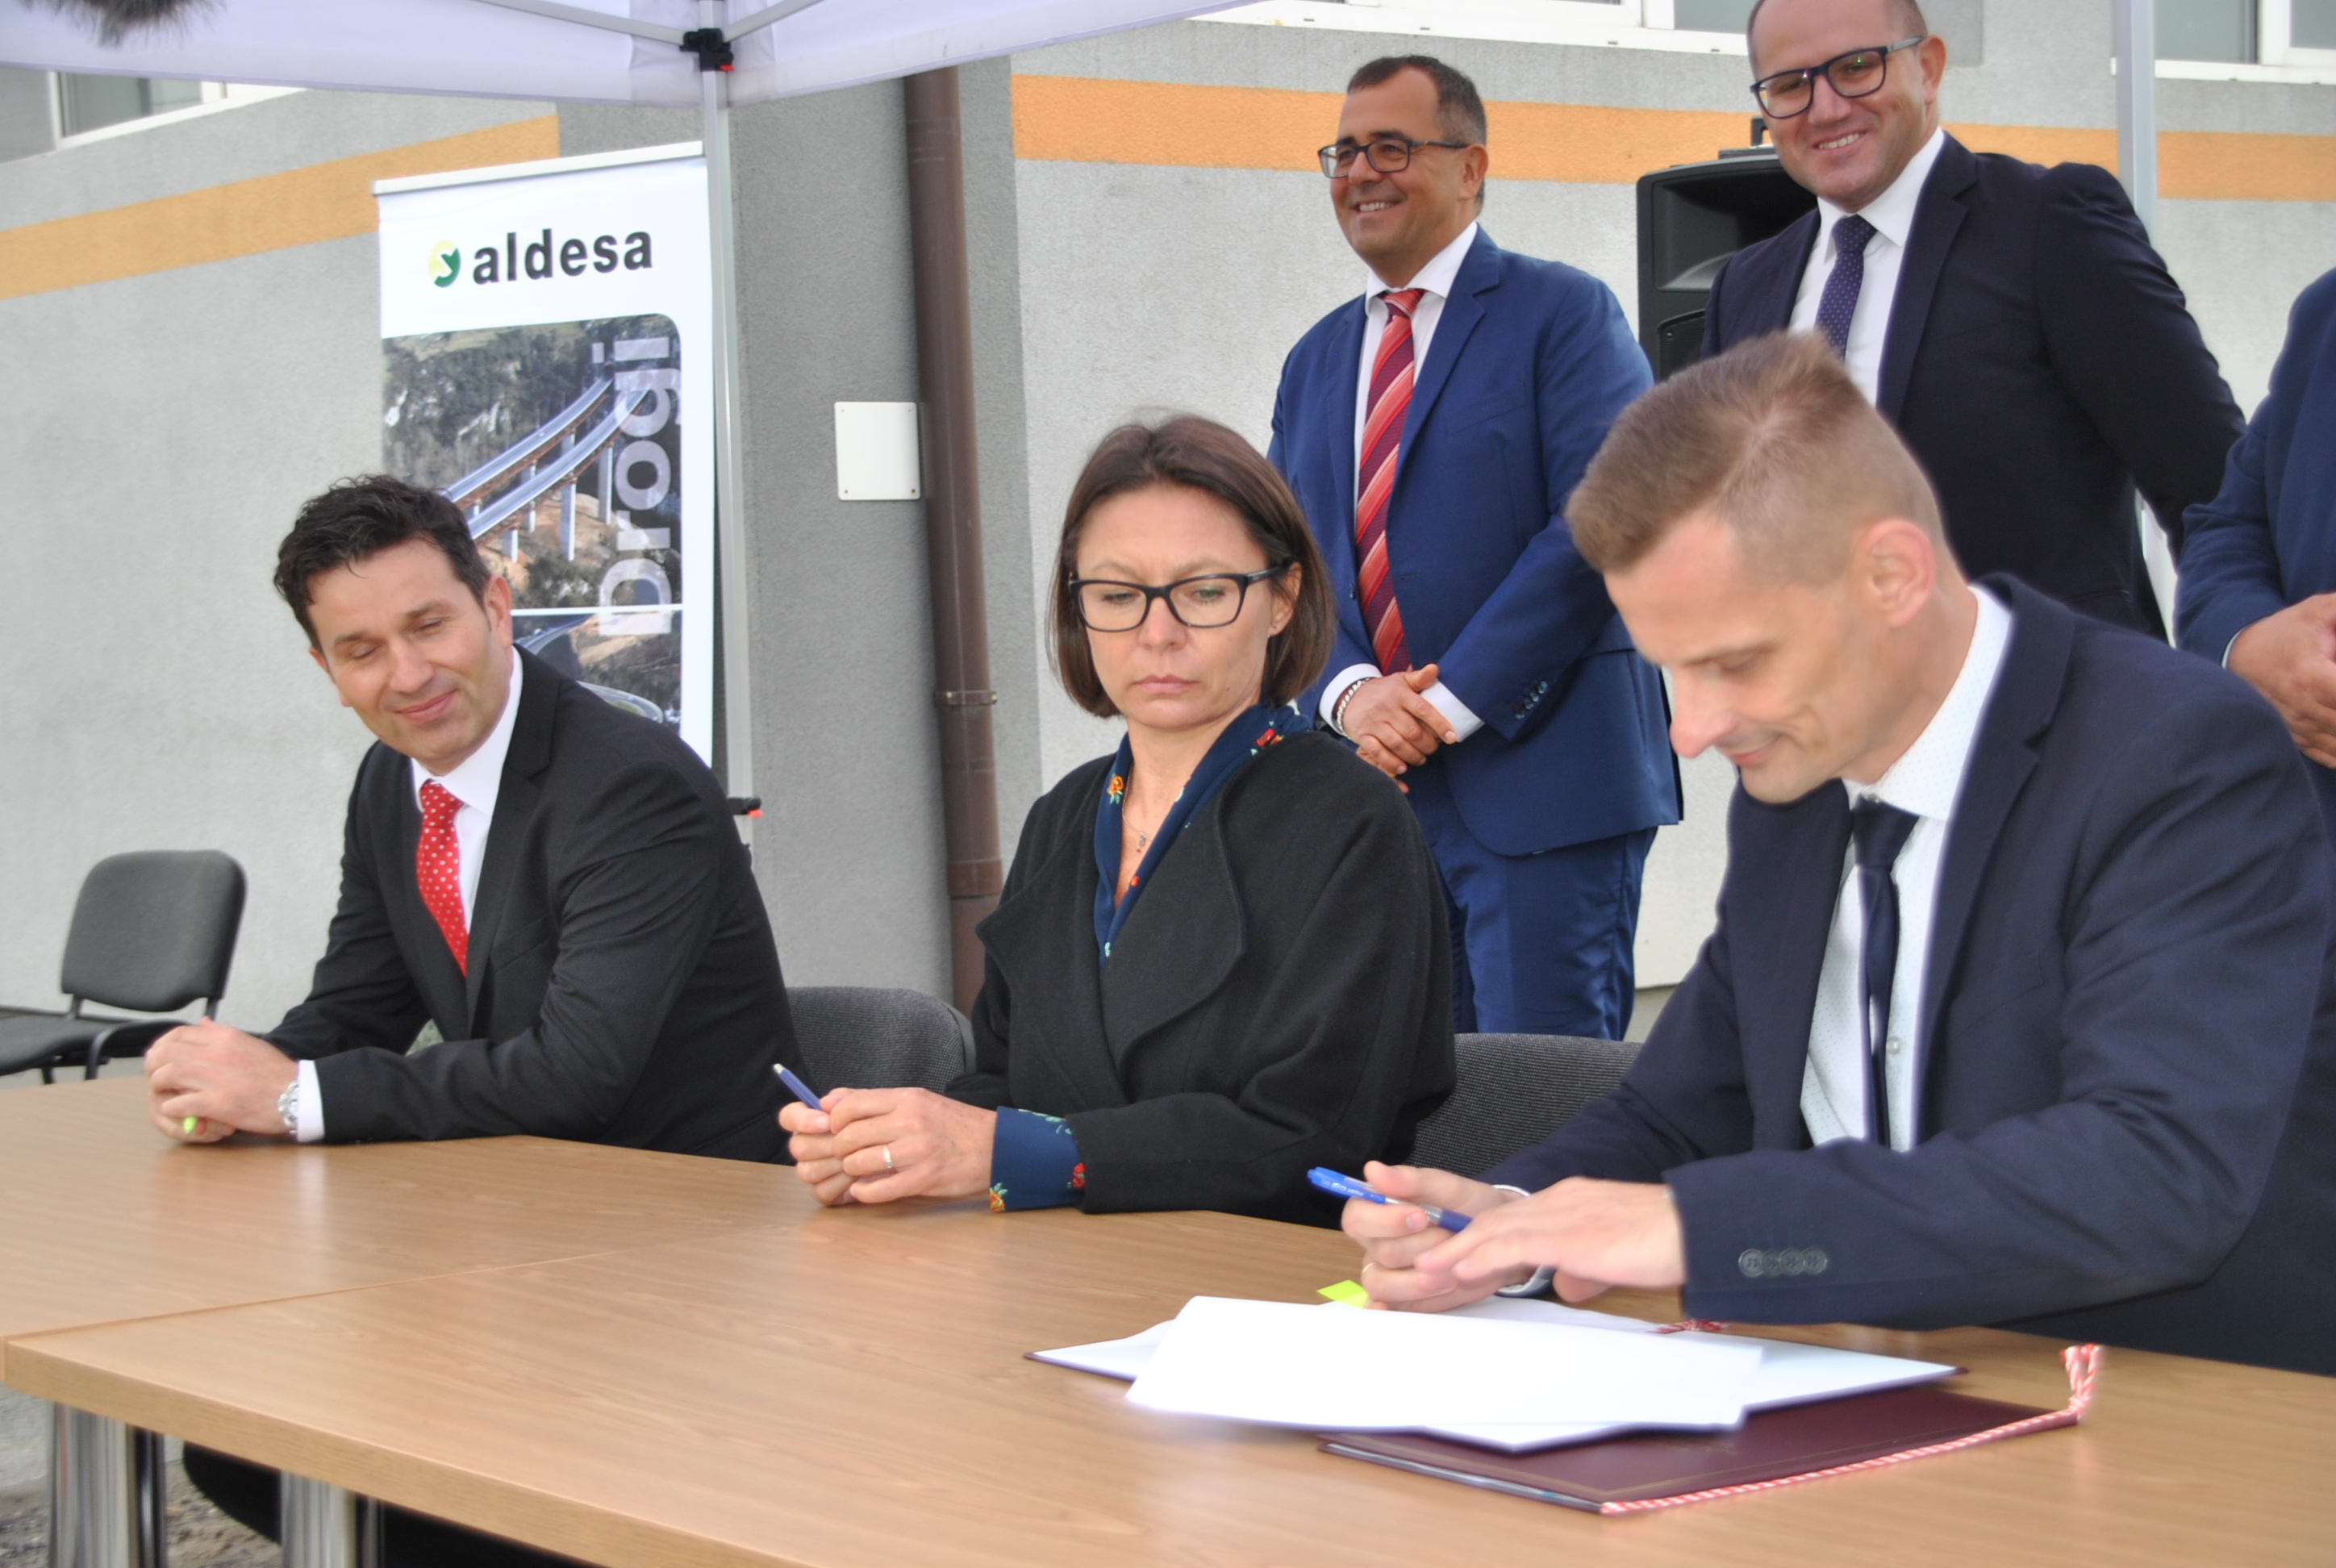 Aldesa - Výstavba úseku rýchlostnej cesty S7 Płońsk – Czosnów